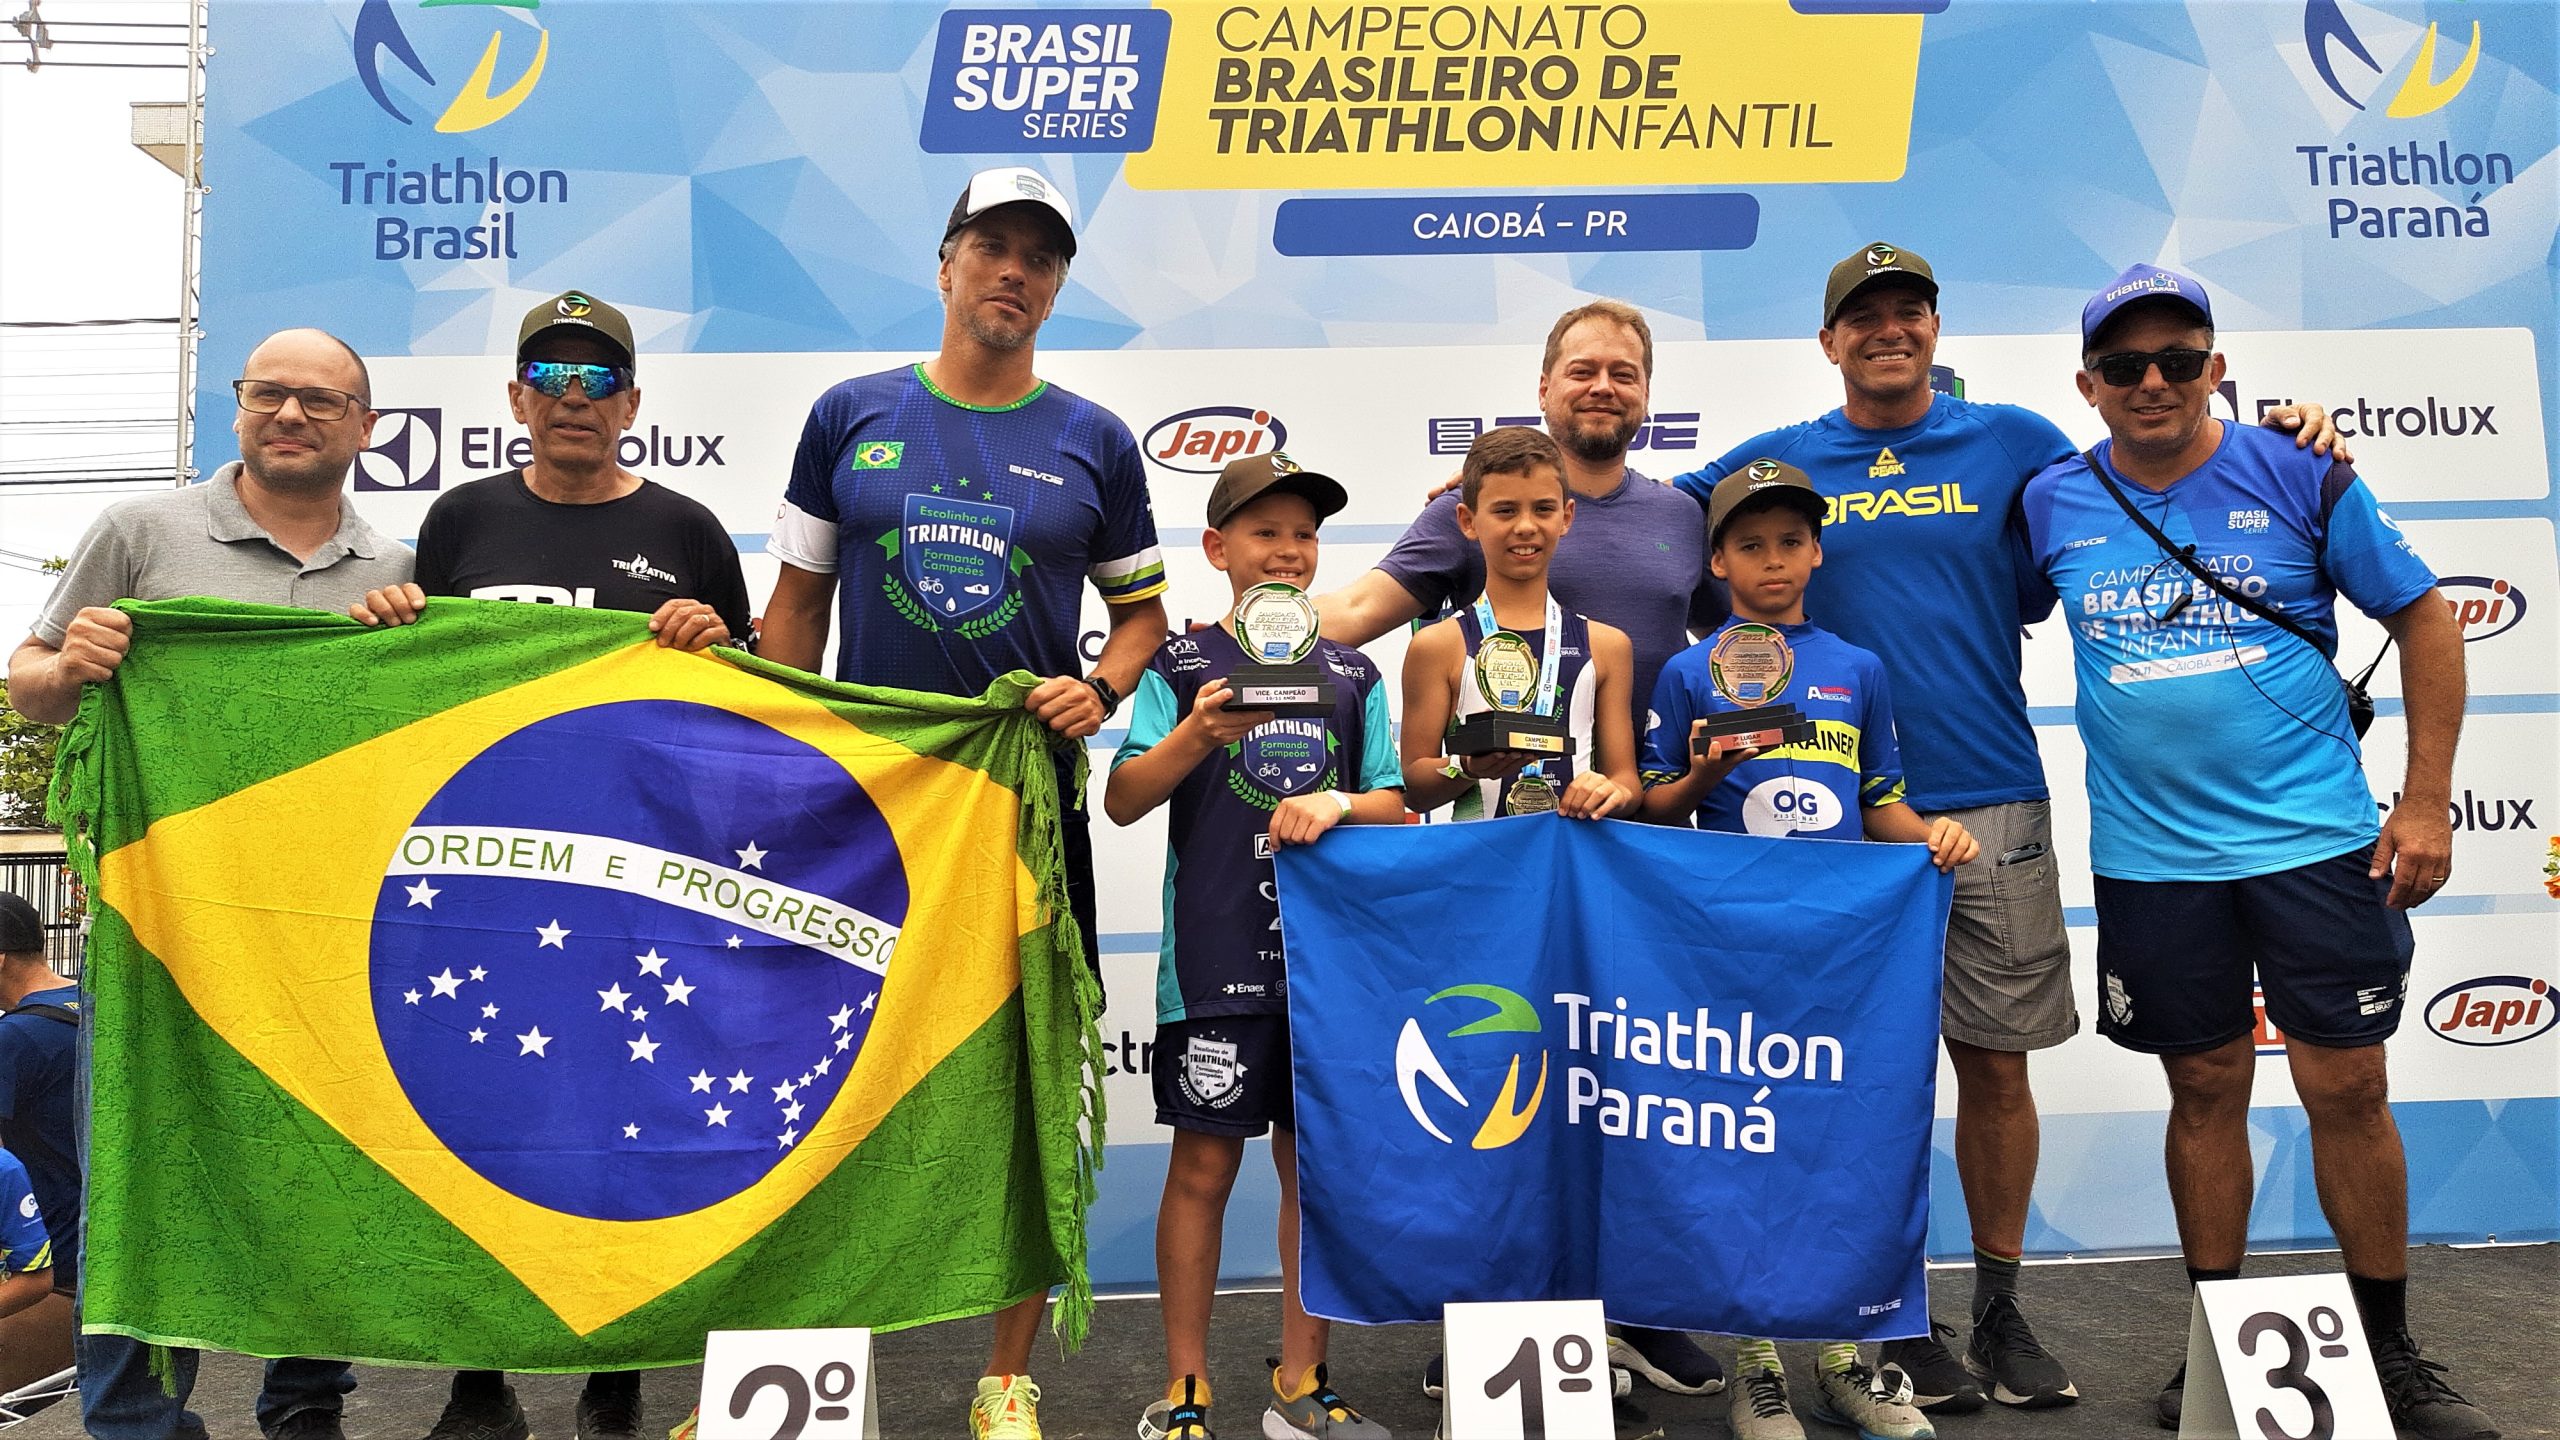 Brasileiro de Triathlon Infantil faz história no fomento ao esporte -  Esporte News Mundo